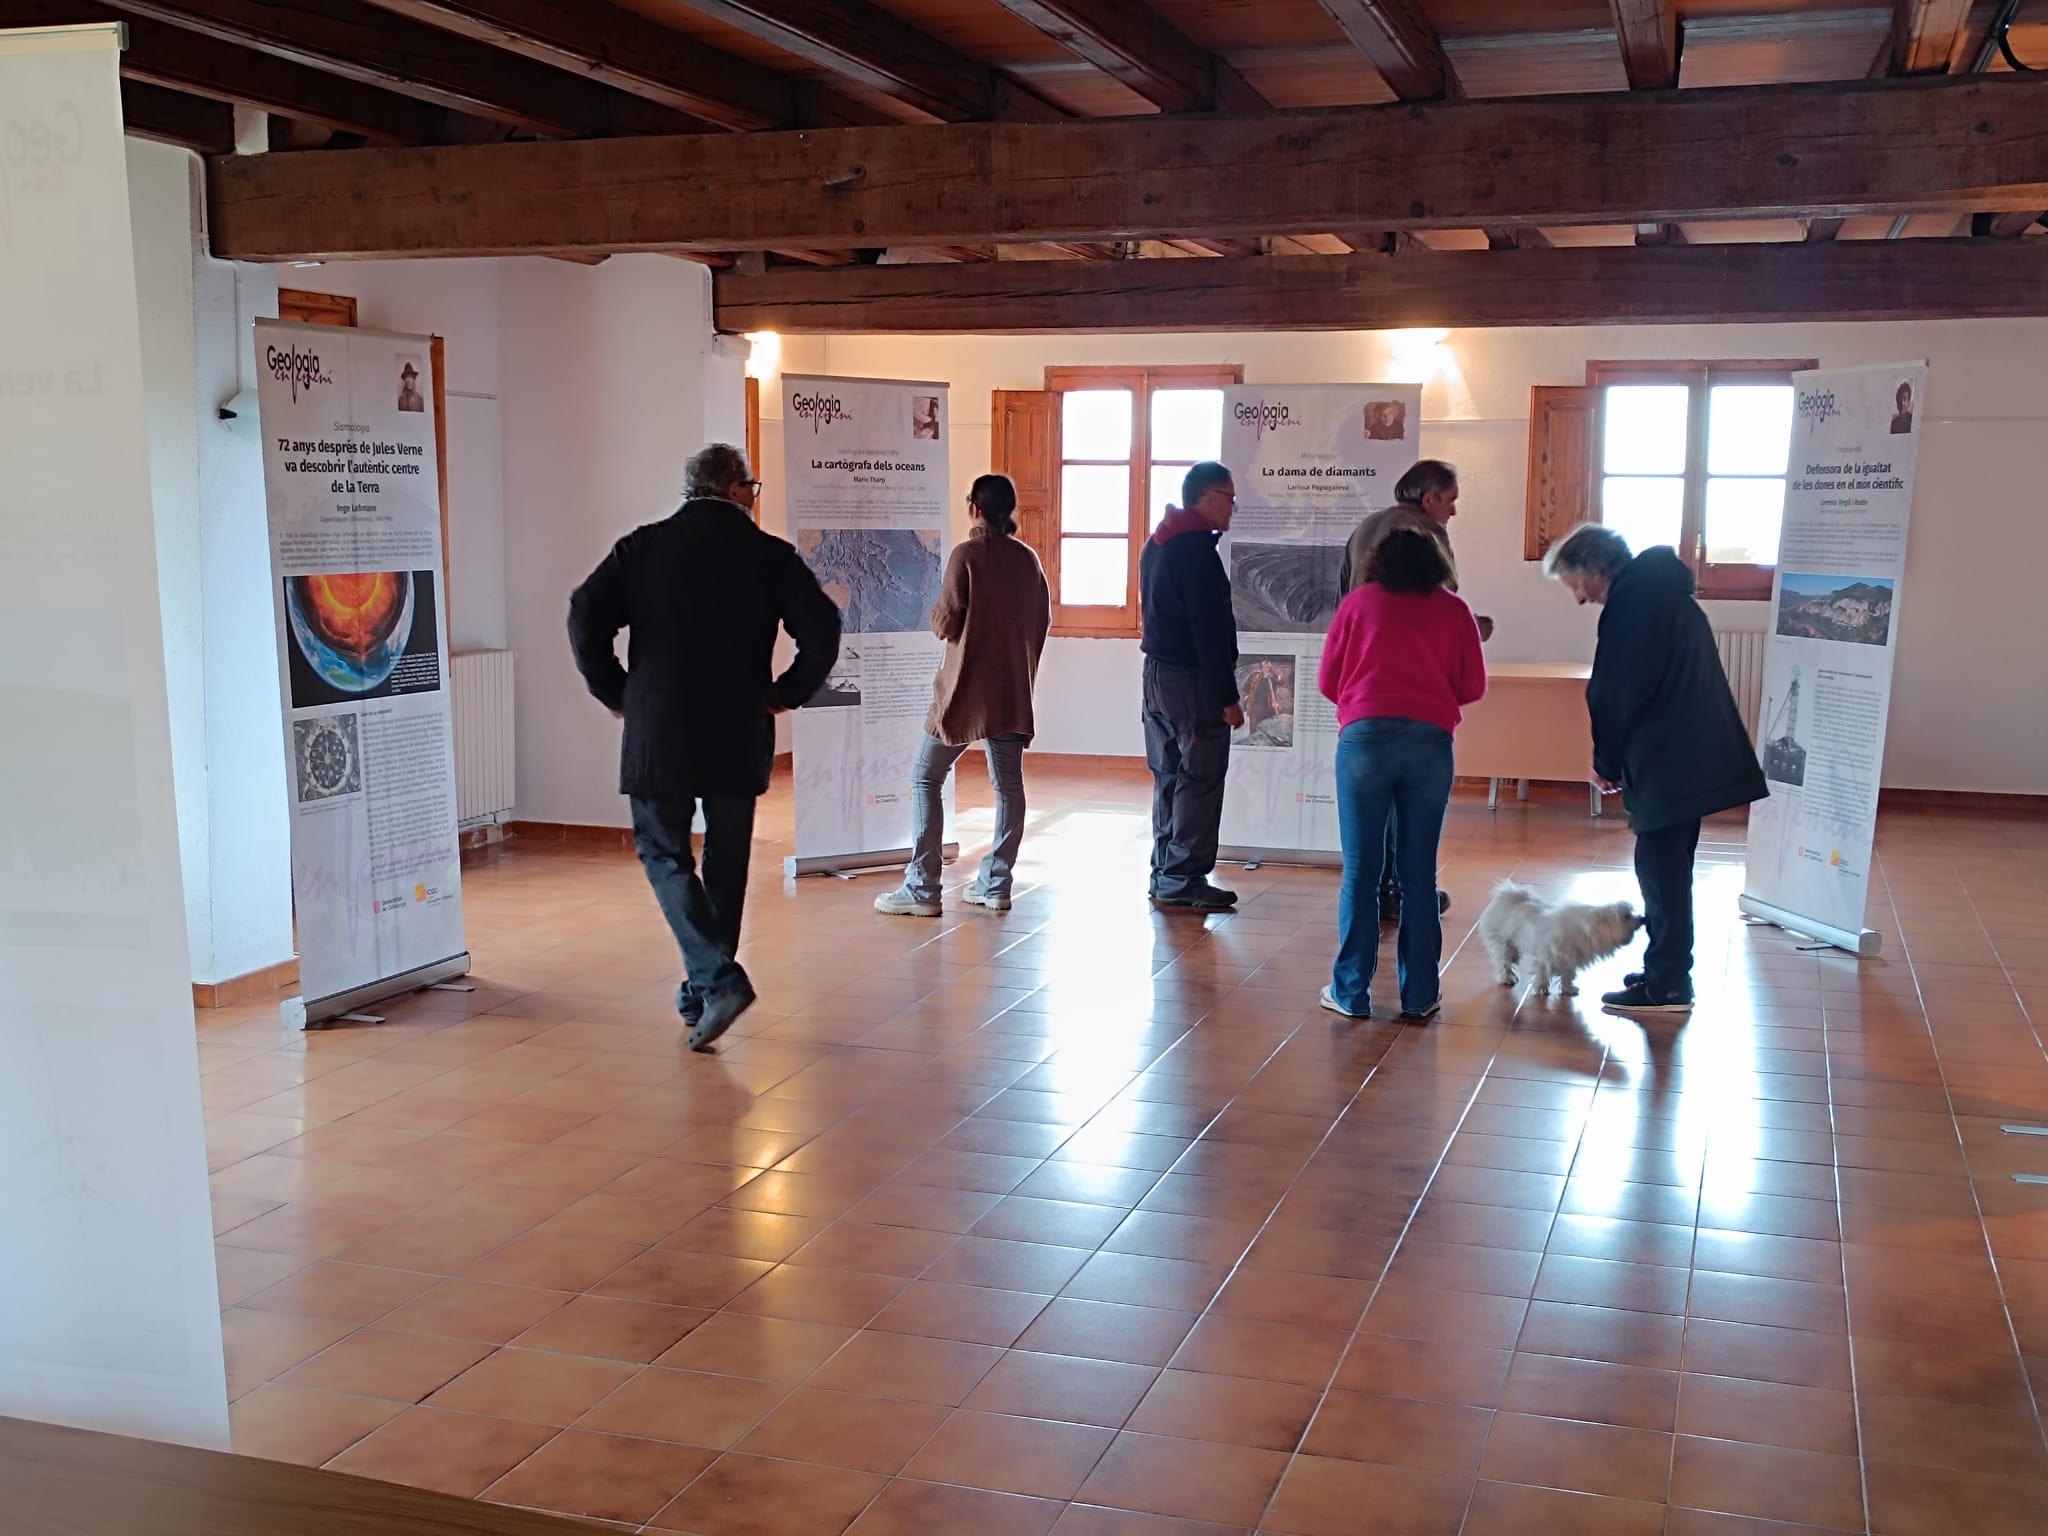 Diverses persones visitant l'exposició "Geografia en femení", a un recinte tancat de Campelles